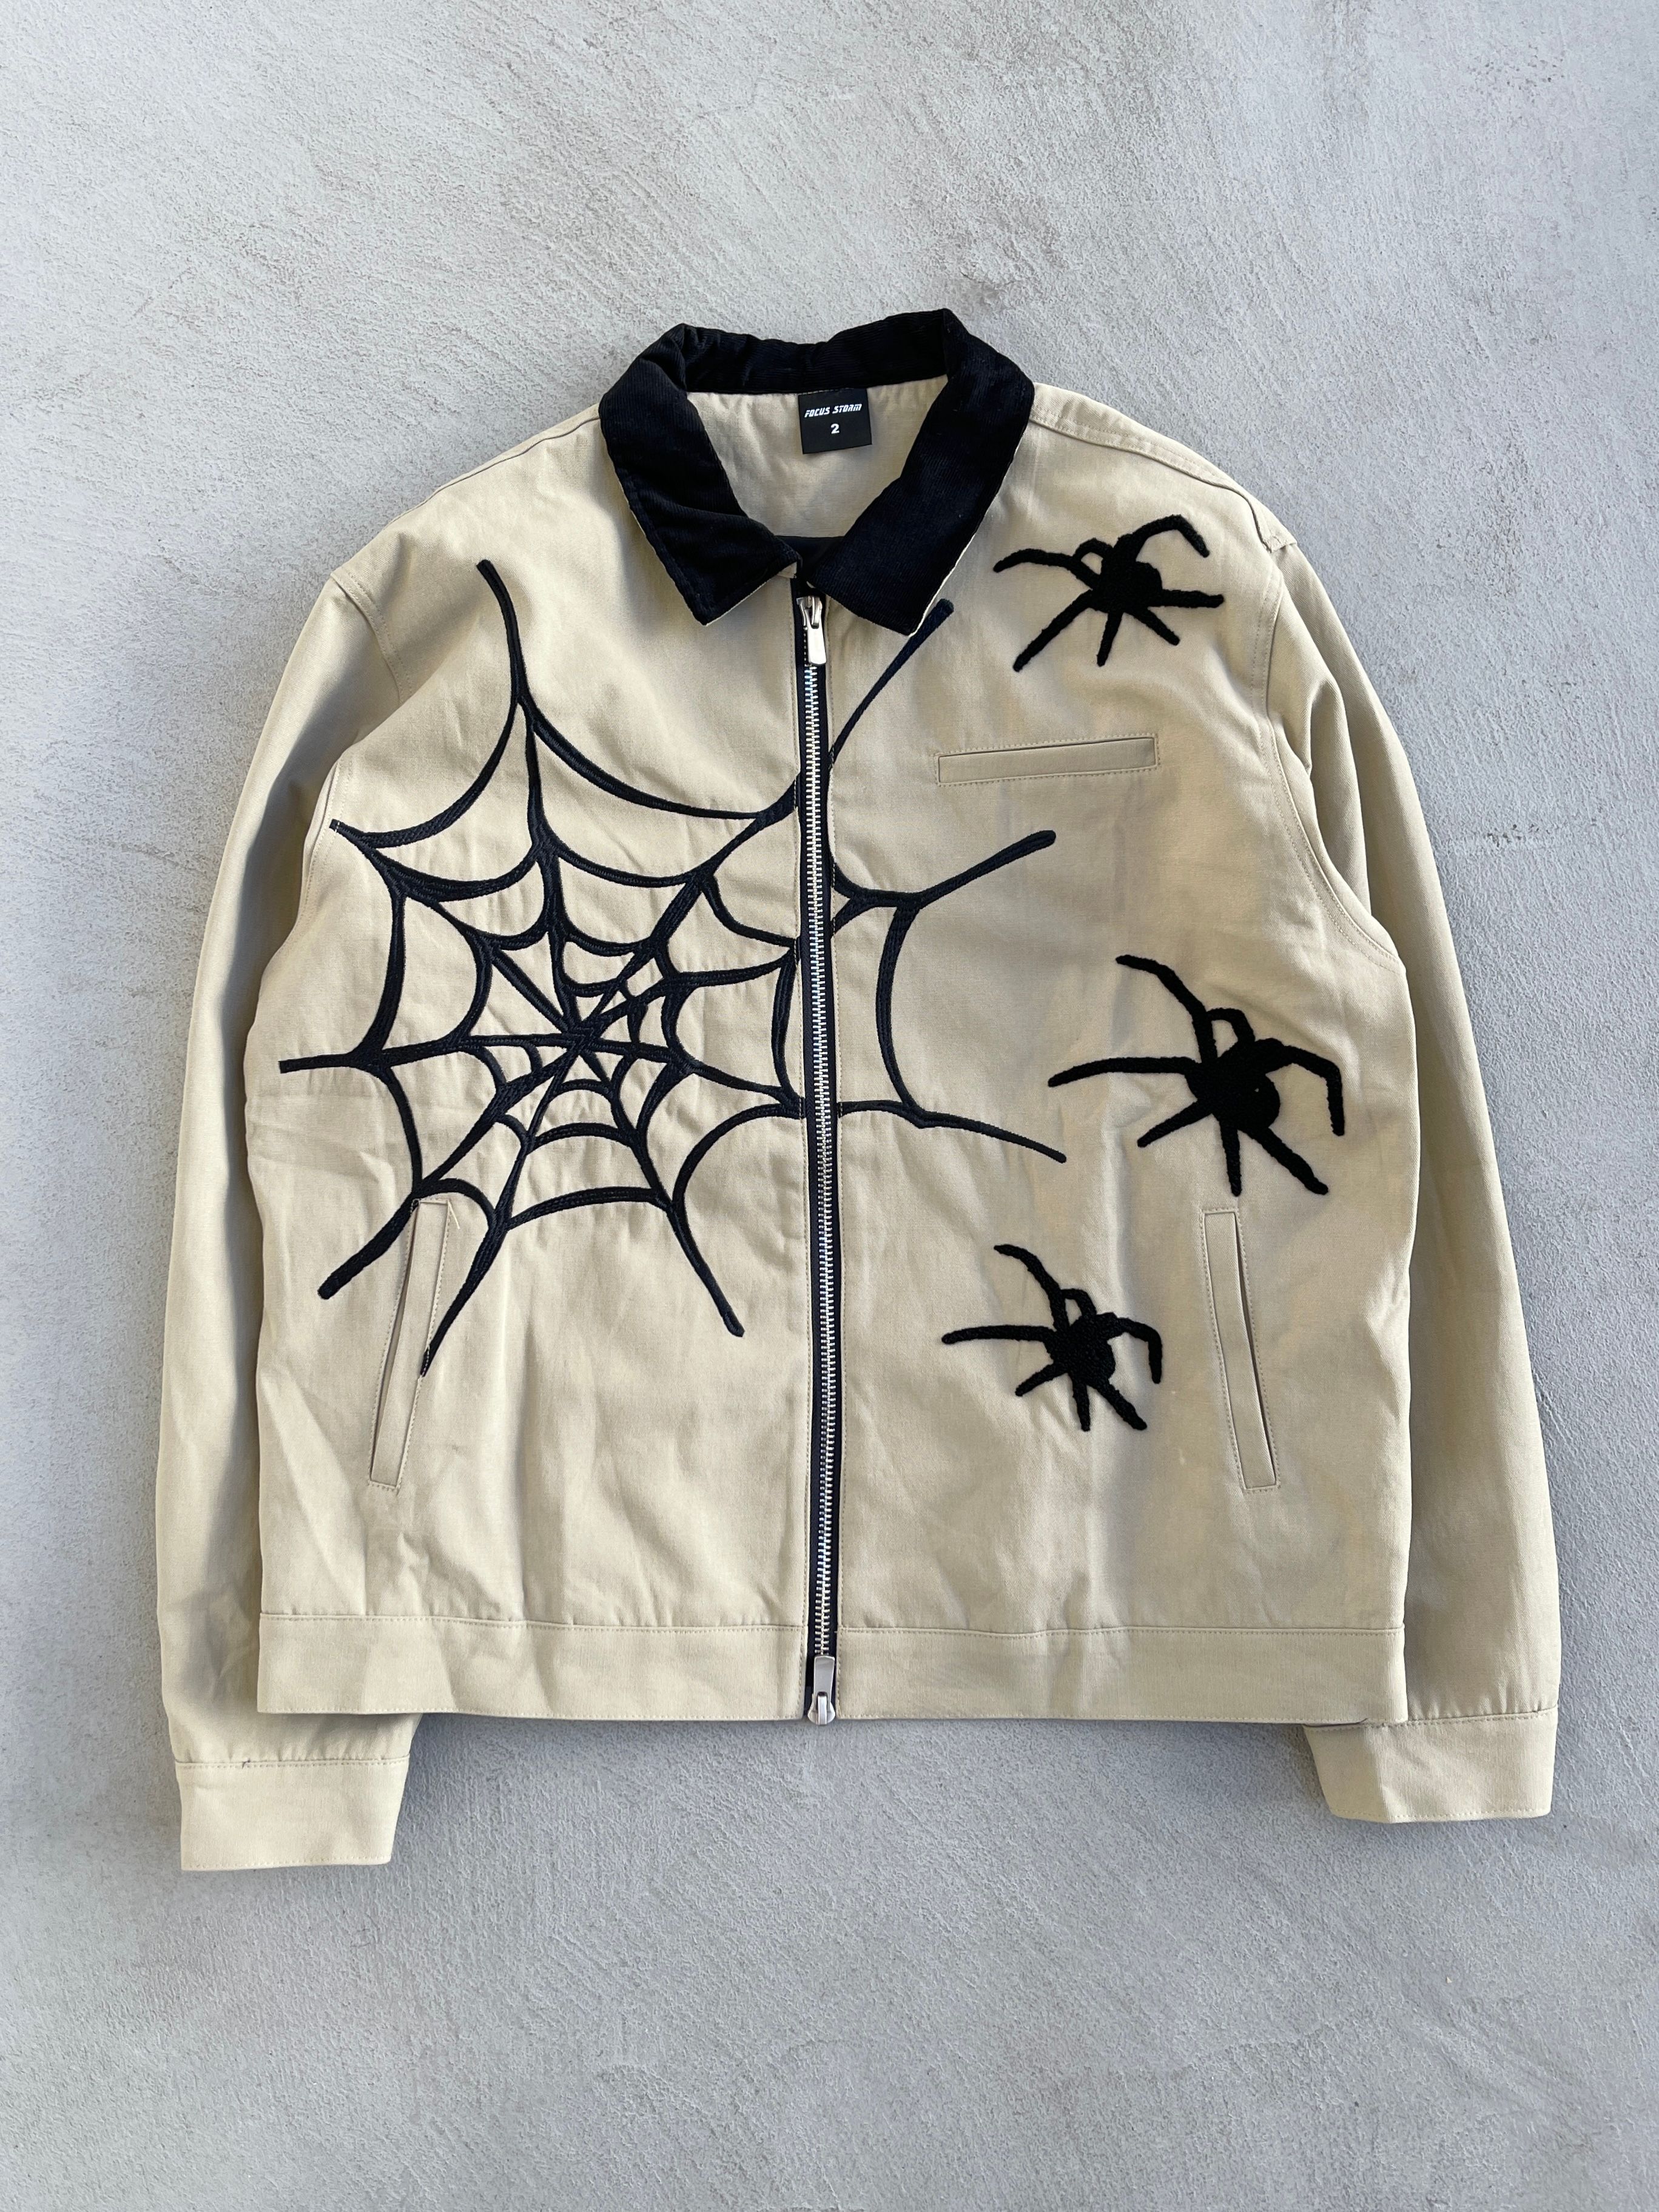 Vintage - STEAL! Y2K Japan Spiders Web Zip-up Jacket (M) - 1